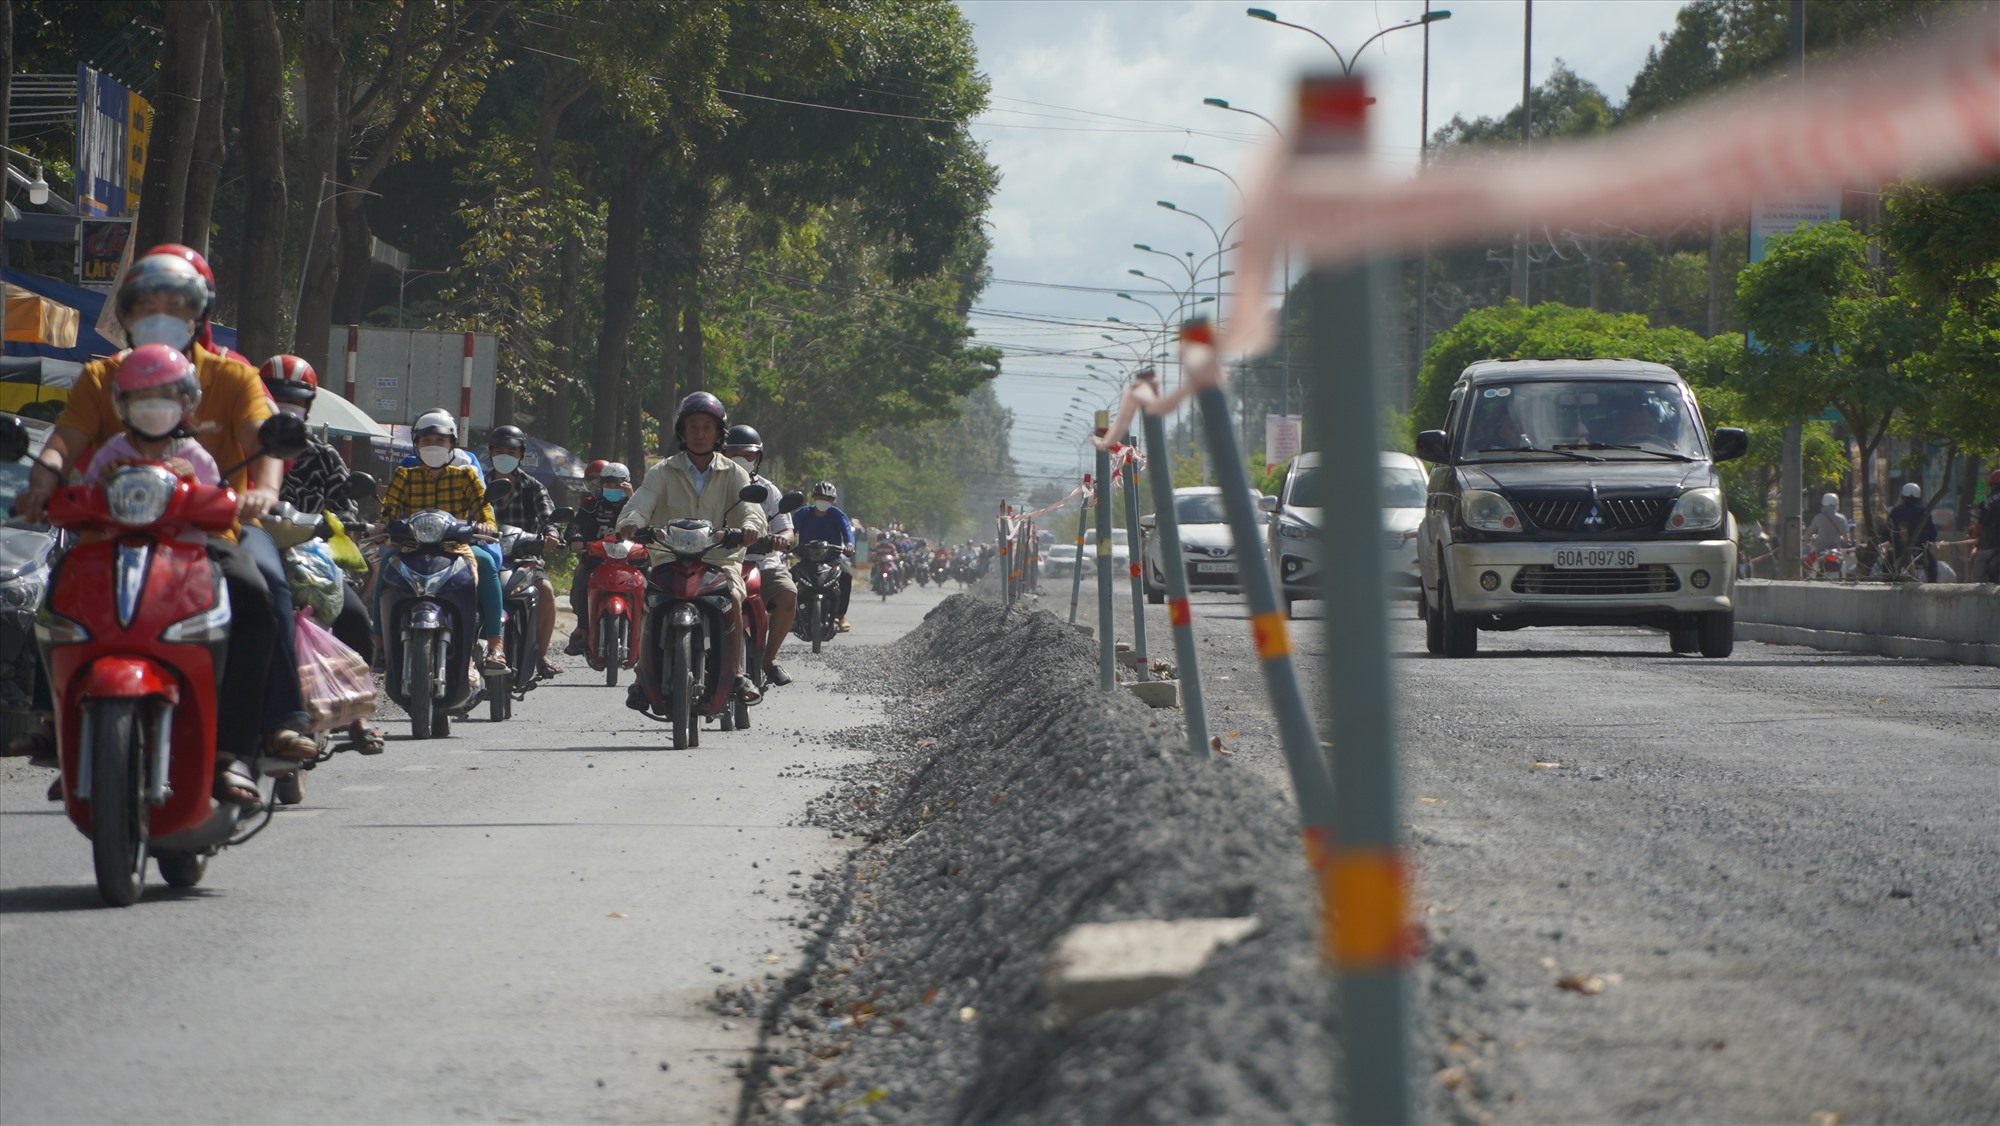 Công trình nâng cao đường Nguyễn Văn Cừ, đoạn từ ngã tư giao với đường Nguyễn Văn Linh kéo dài đến đường Hoàng Quốc Việt cũng đang được thi công. Có chiều dài khoảng 1,5Km, với kinh phí xây lắp 42 tỉ đồng.